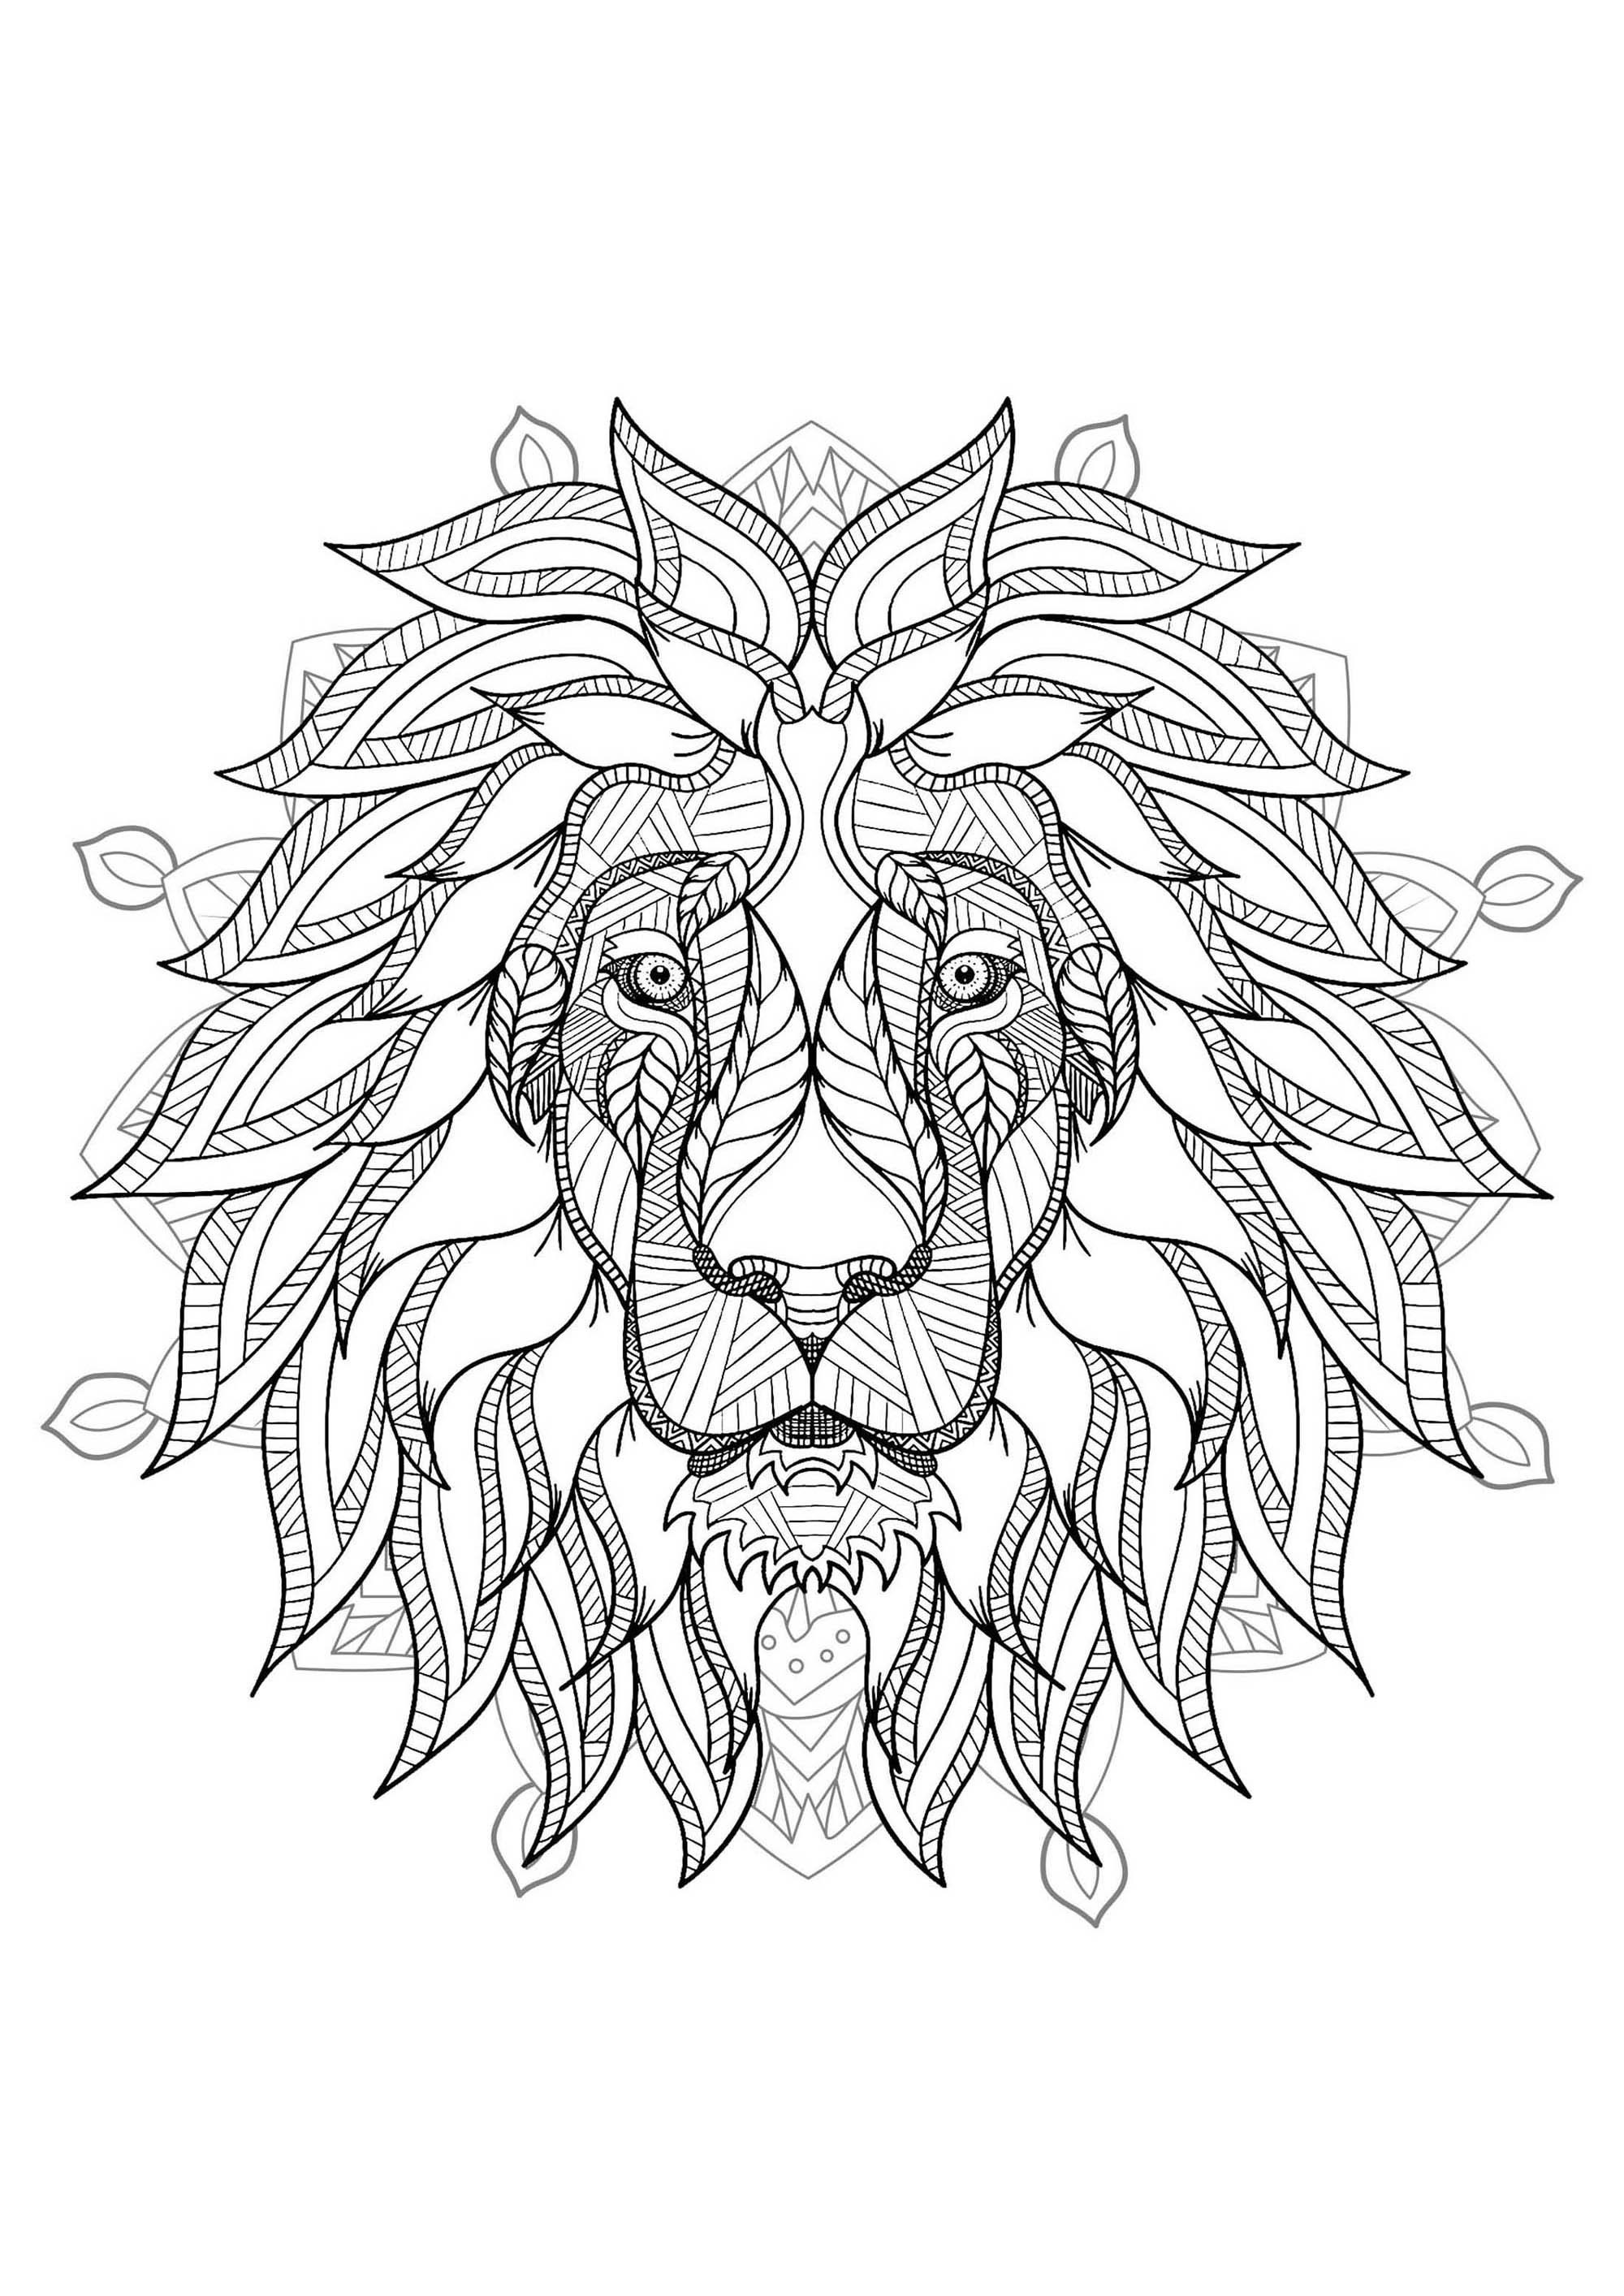 Un mandala protagonizado por el rey de los animales: el león, para los que prefieren colorear cosas concretas y vivas.